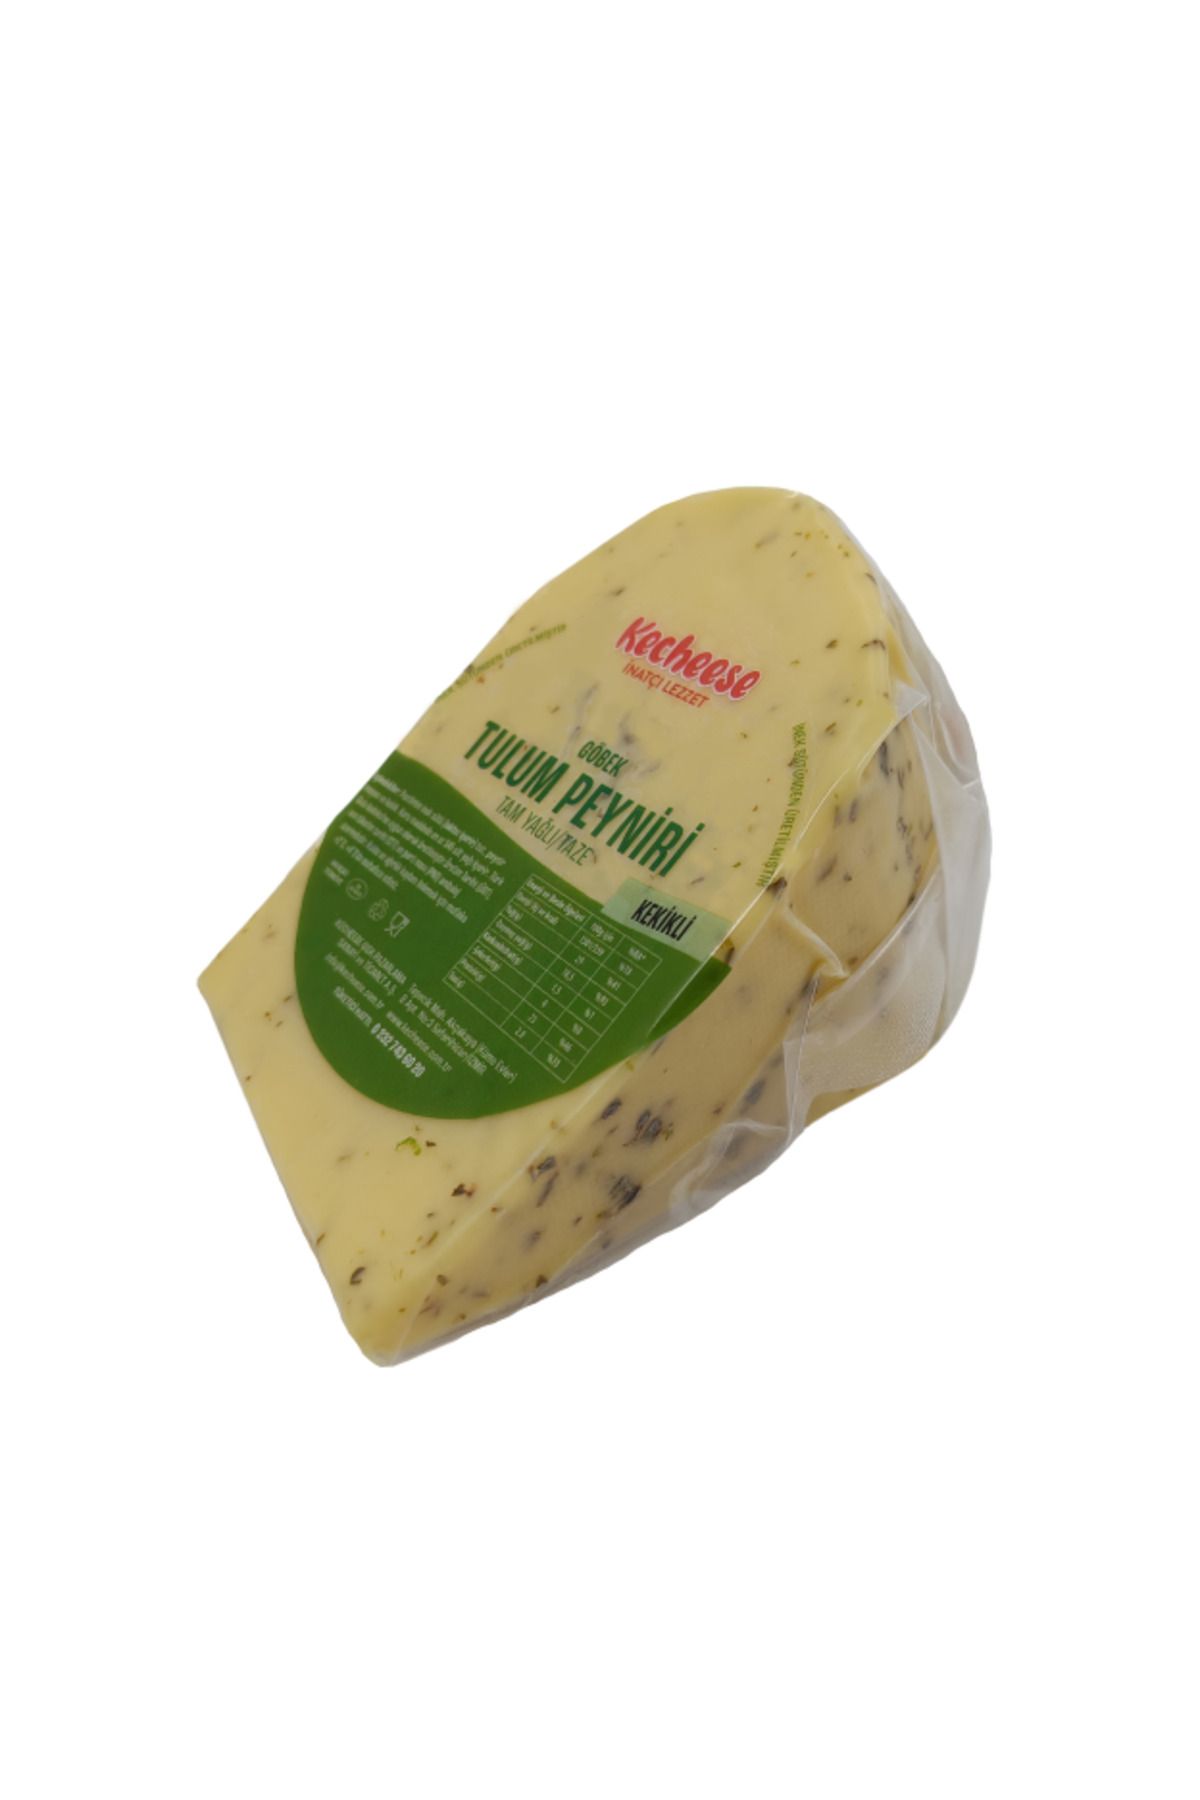 KECHEESE Tam Yağlı Kekikli Göbek Tulum Peyniri 500 gr